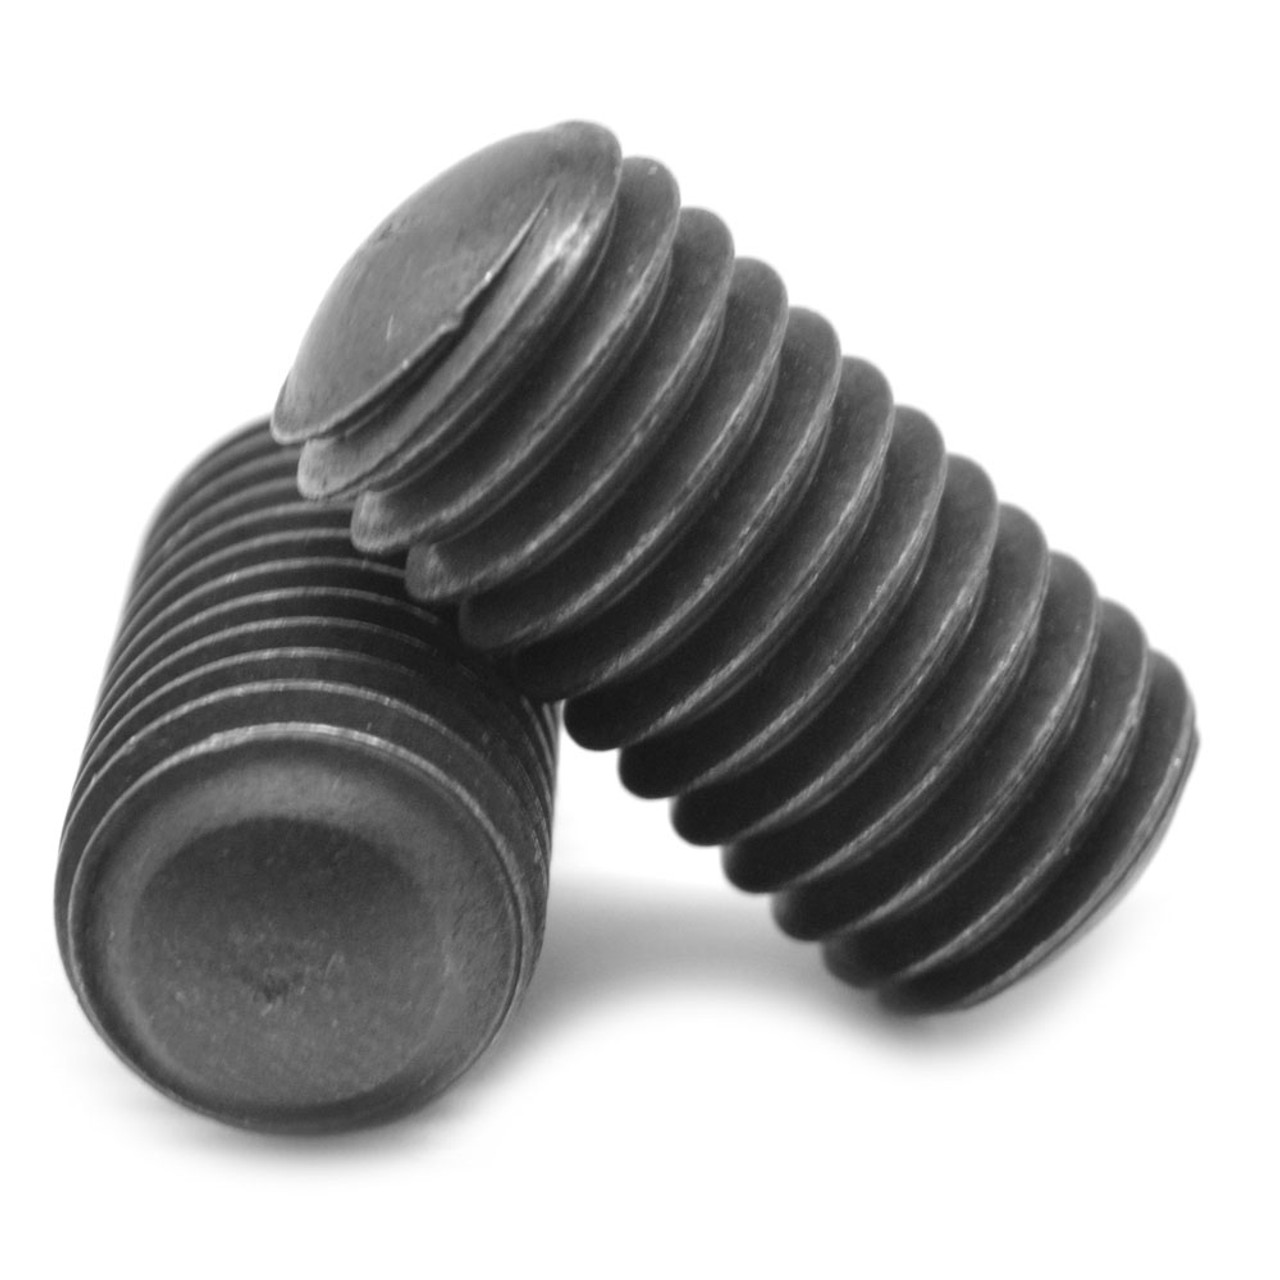 #10-24 x 7/8" Coarse Thread Socket Set Screw Oval Point Alloy Steel Black Oxide